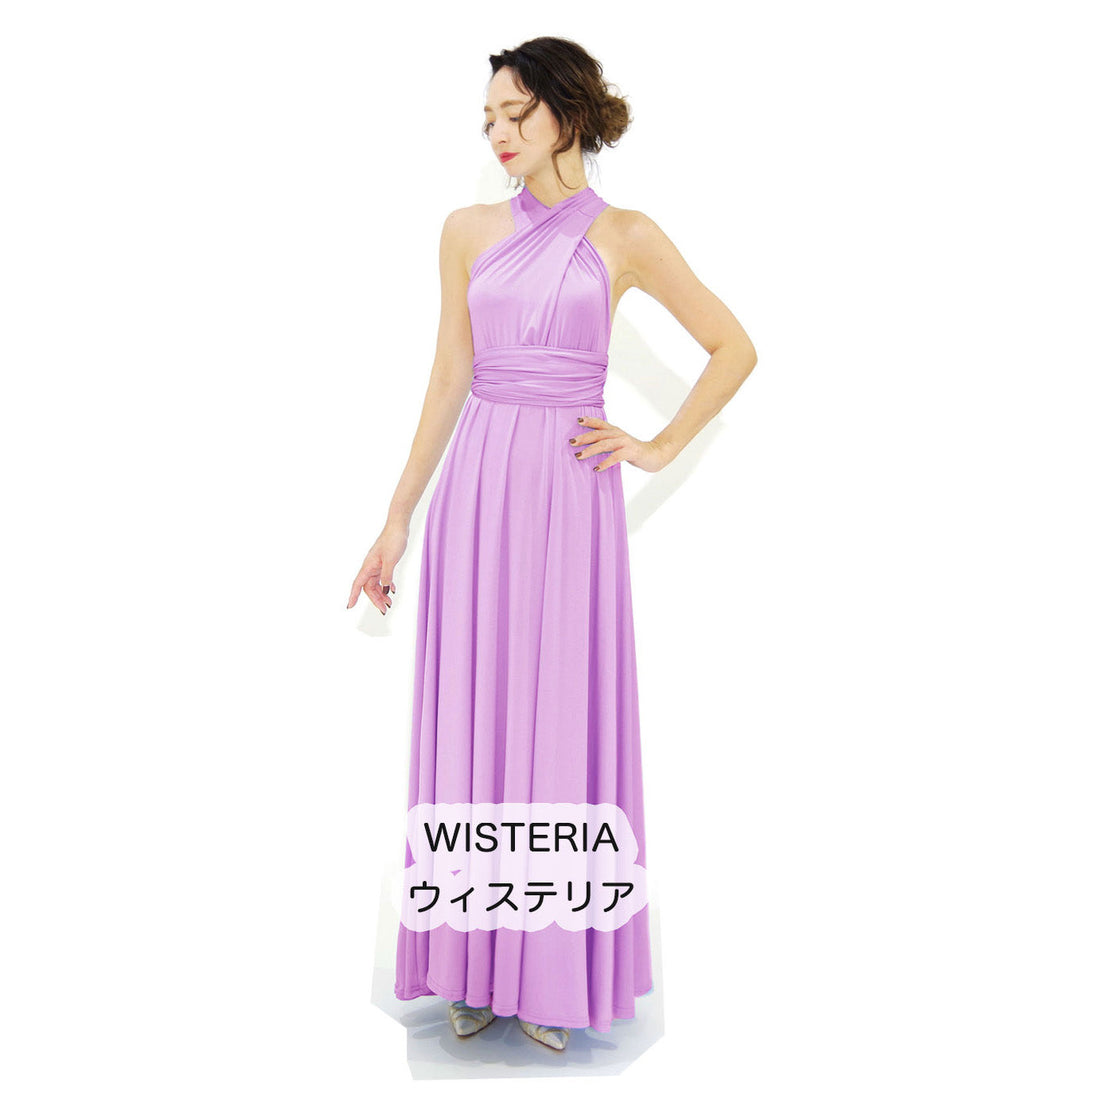  ツイスト＆ラップ インフィニティドレス フリーサイズ 大きいサイズ マタニティ ブライズメイド ドレス 衣装 フラダンス インフィニットドレス ピンク パープル